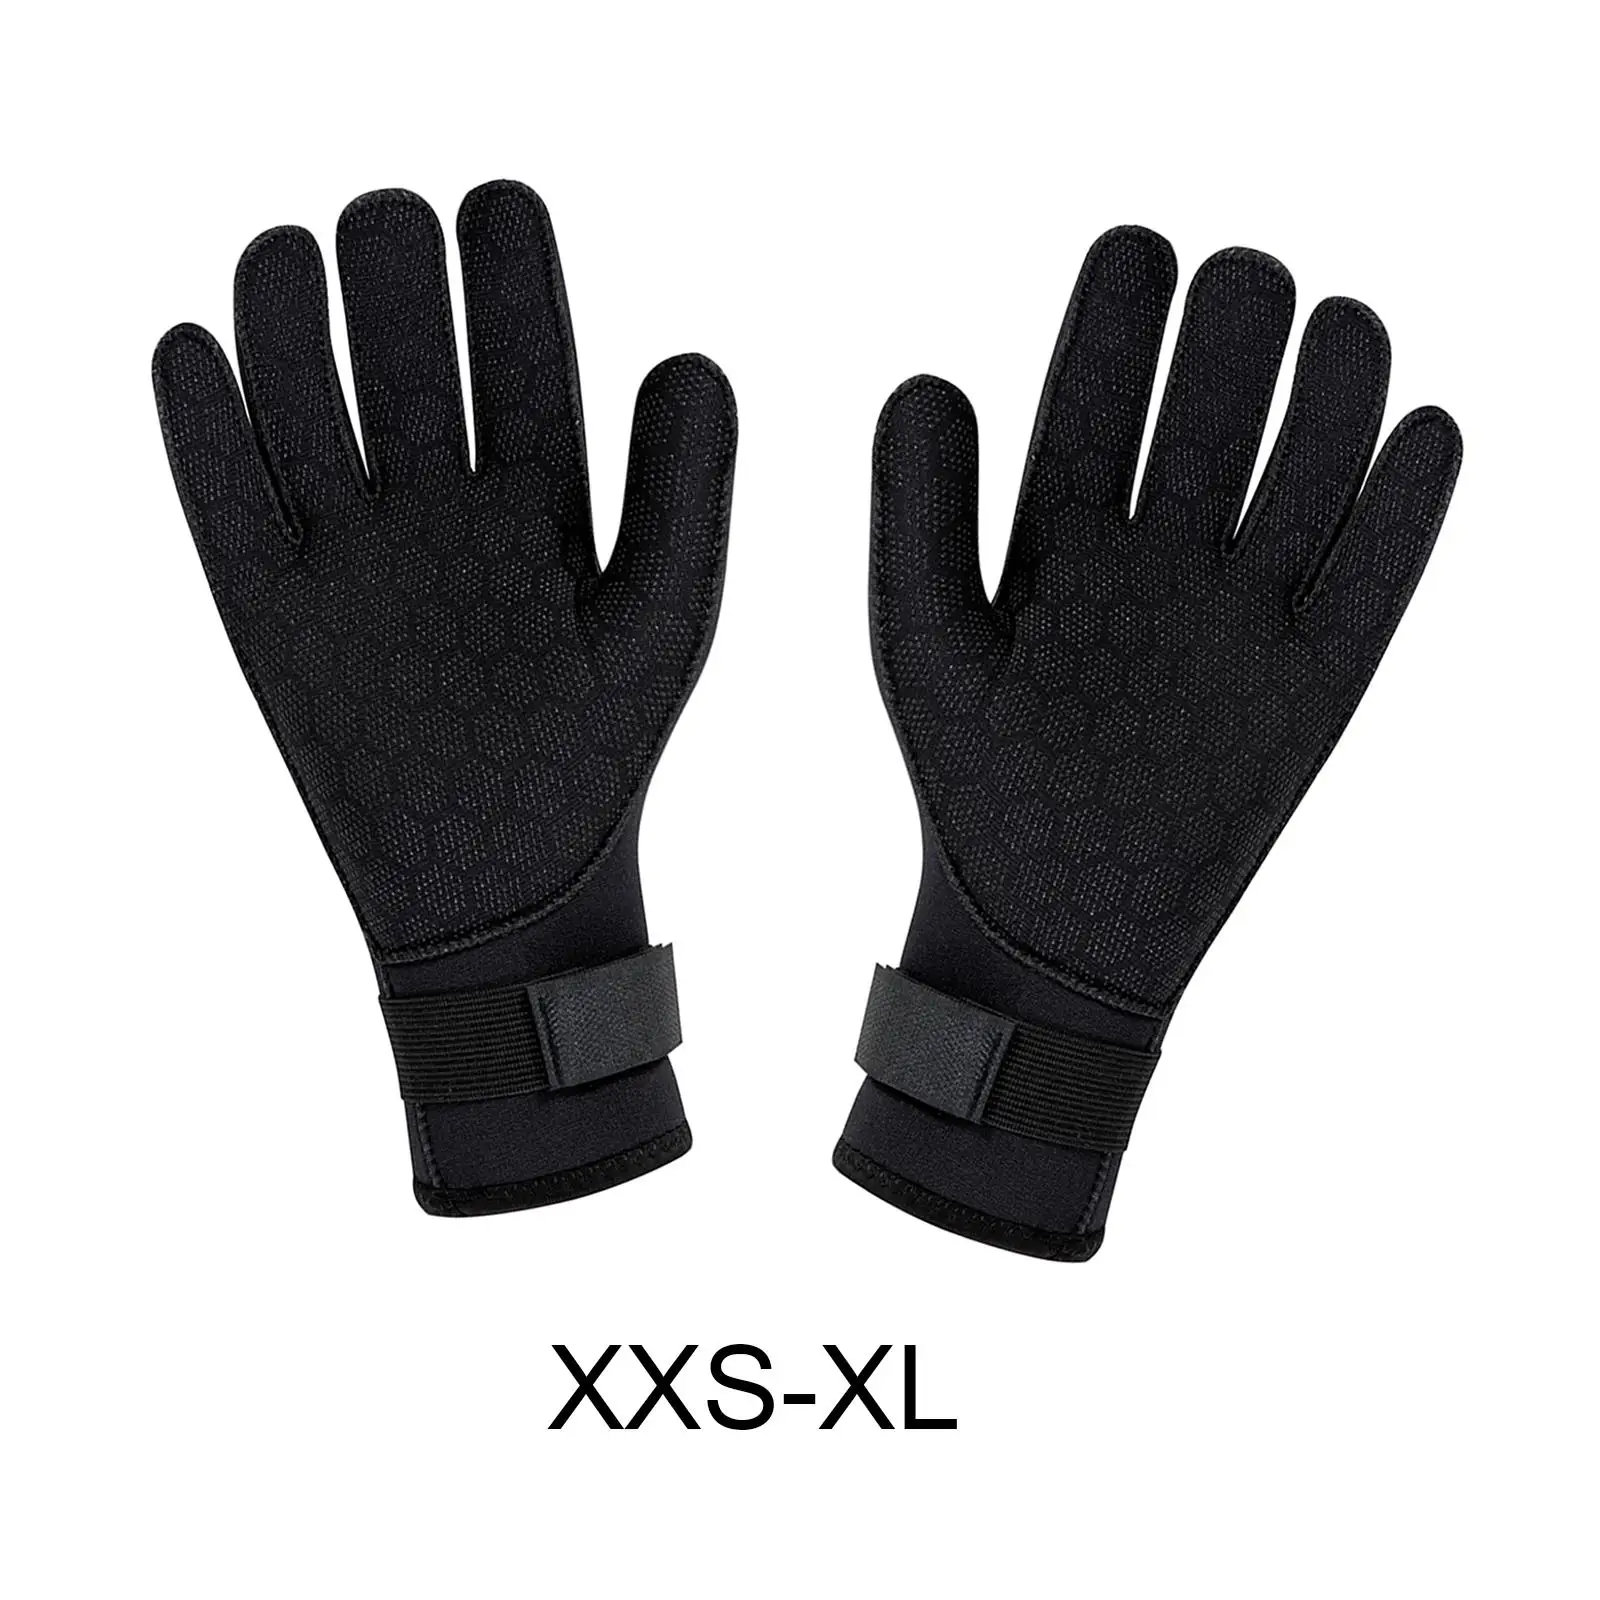 Scuba Diving Gloves Wetsuit Gloves Thermal 3mm Neoprene Gloves Water Gloves Swimming Glove for Men Women Kayaking Canoe Surfing